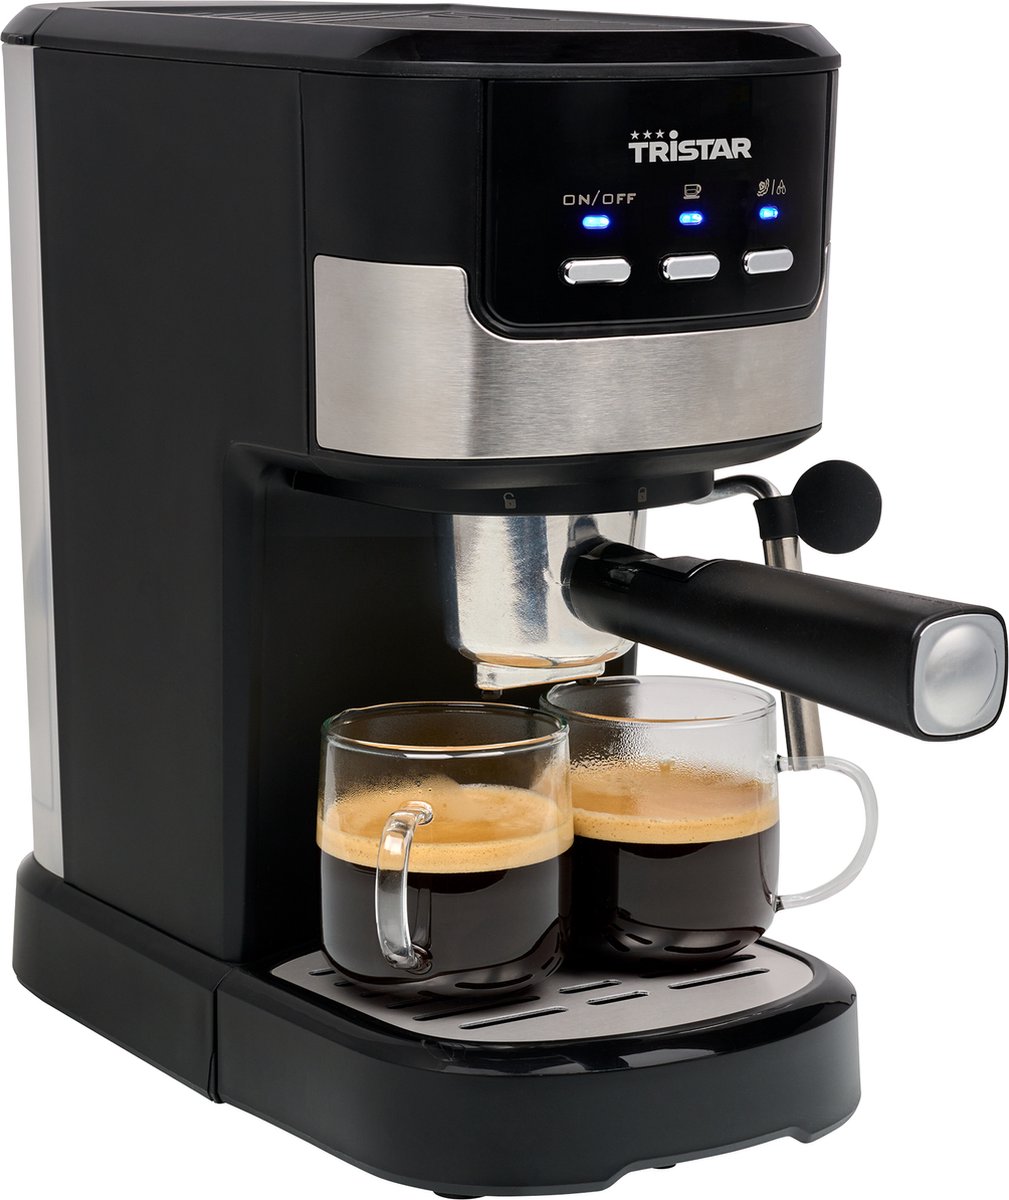 Tristar Espressomachine & Koffiecupmachine CM-2278 - Koffiemachine geschikt voor capsules & losse koffie - Inclusief melkstoompijpje - Gemakkelijk in gebruik - Zwart RVS